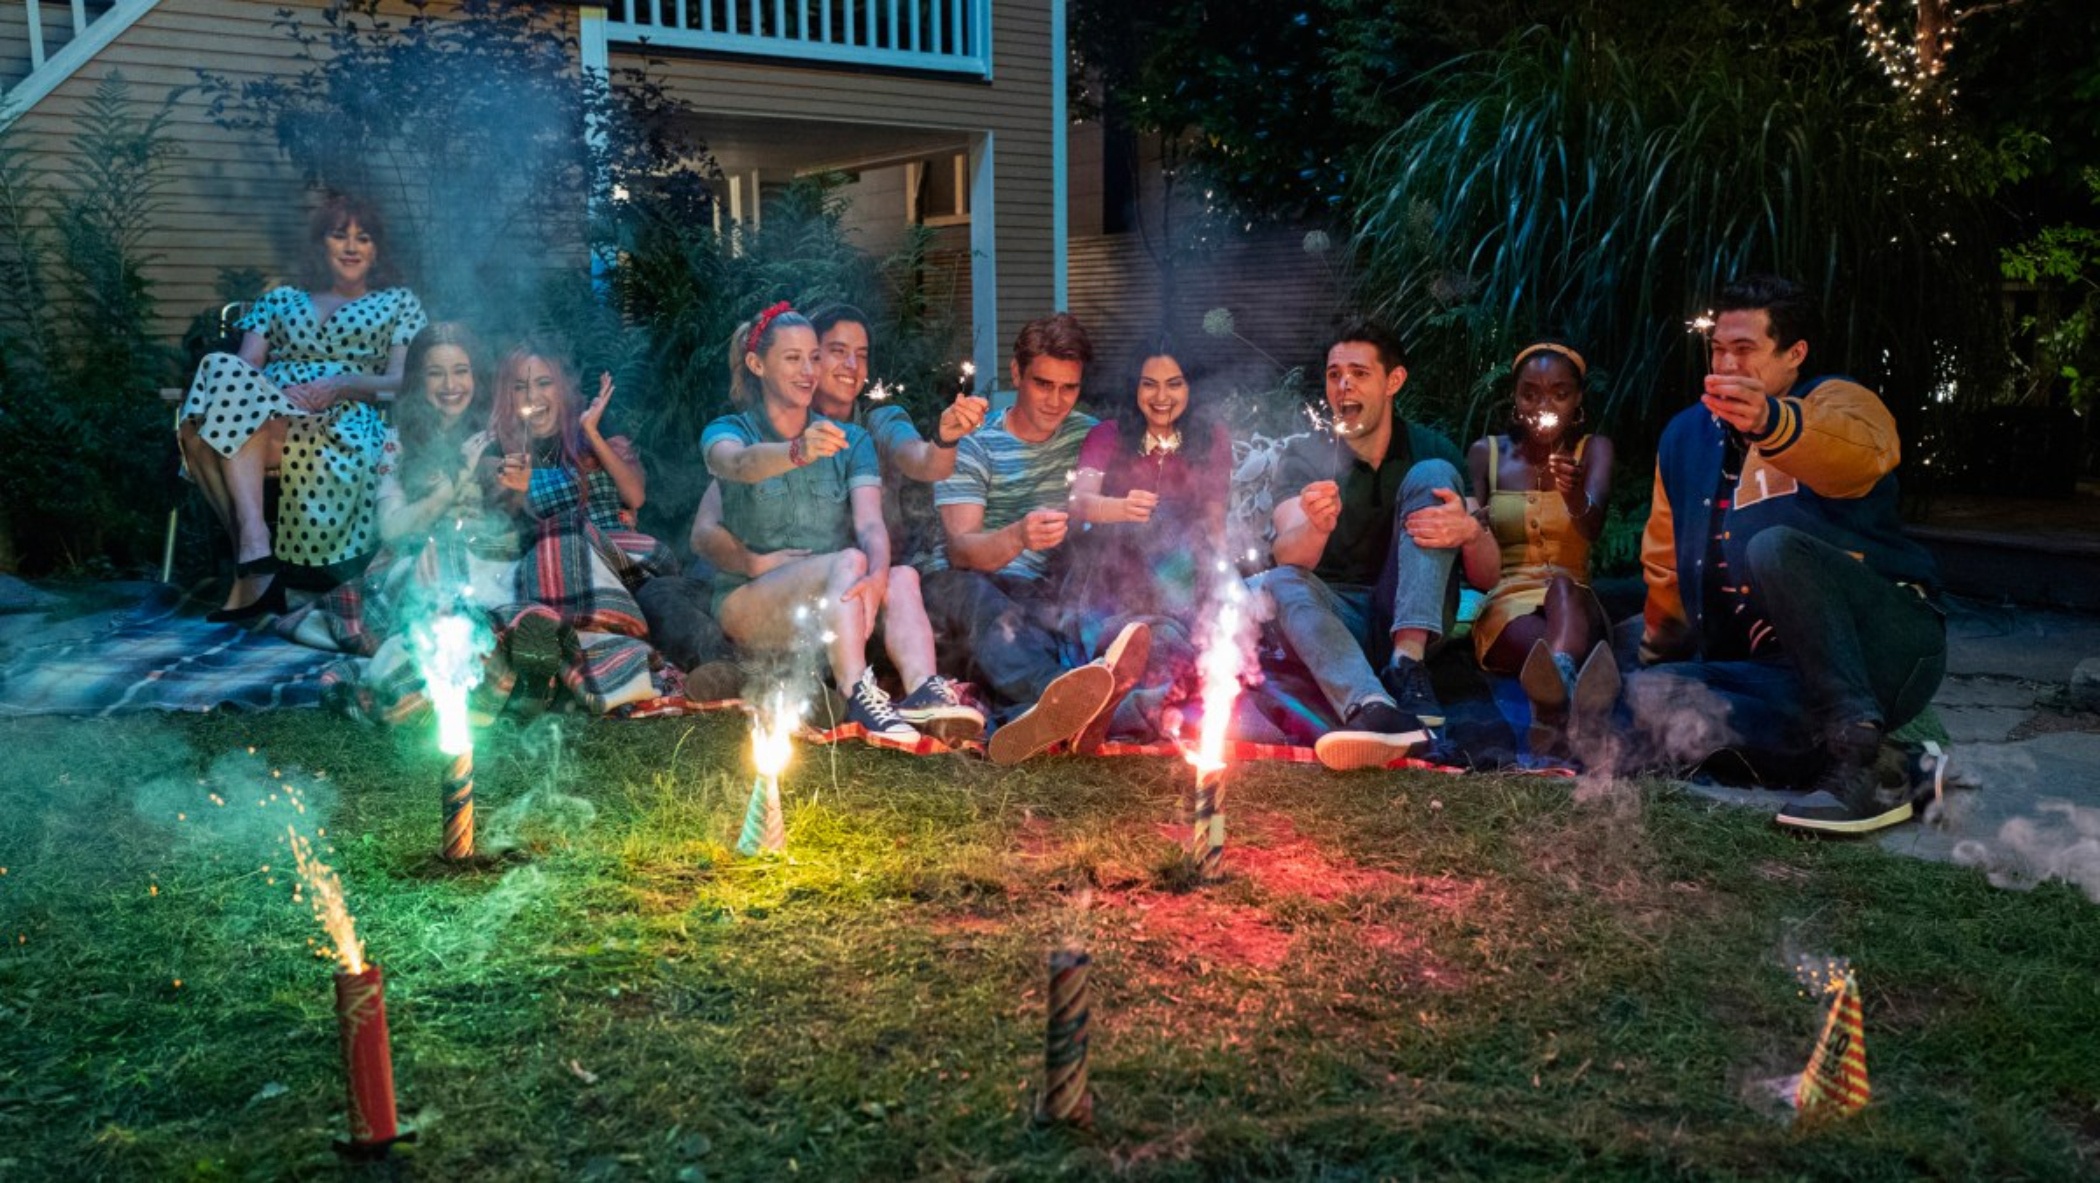 Cena da cena Riverdale. Na cena, vemos uma porção de pessoas sentadas num gramado, sorrindo, enquanto fogos de artifício queimam à frente deles. 